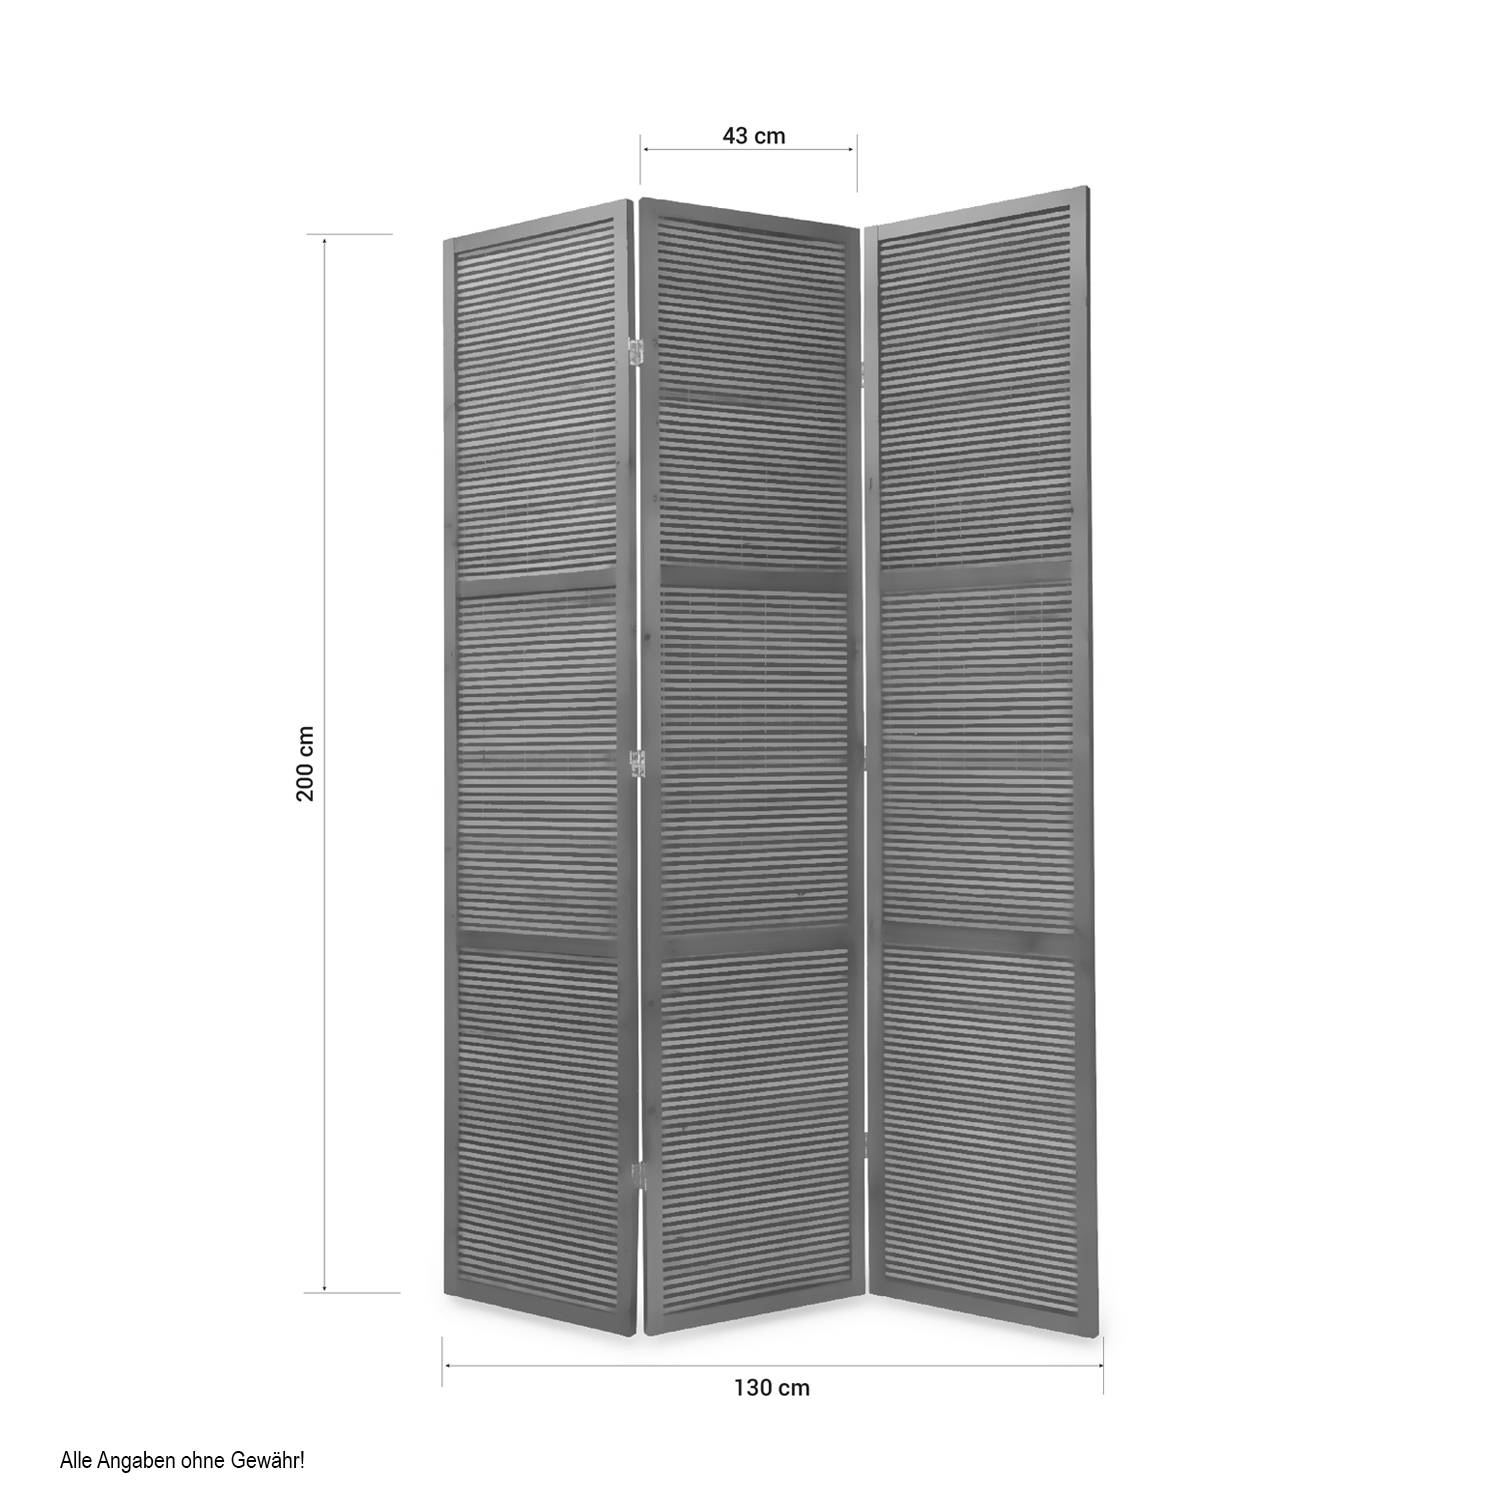 Paravent Raumteiler 3 4 teilig Sonderhöhe 2 m Holz Trennwand Sichtschutz Braun